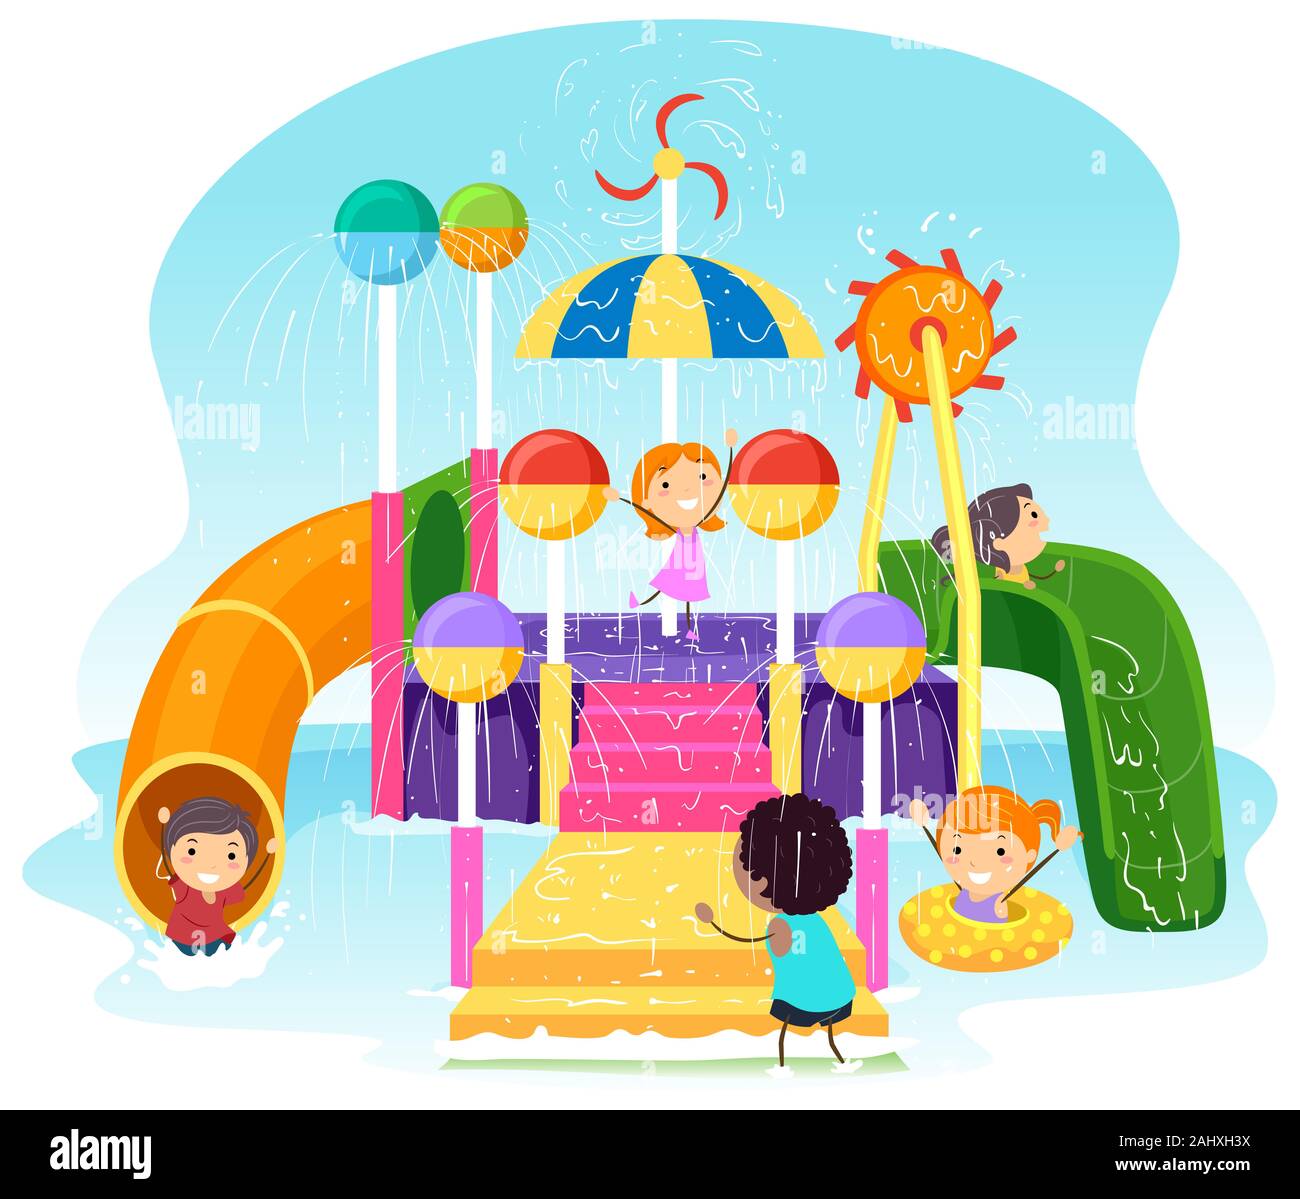 Ilustración de Stickman niños jugando en un parque acuático con toboganes y escaleras Fotografía de stock -